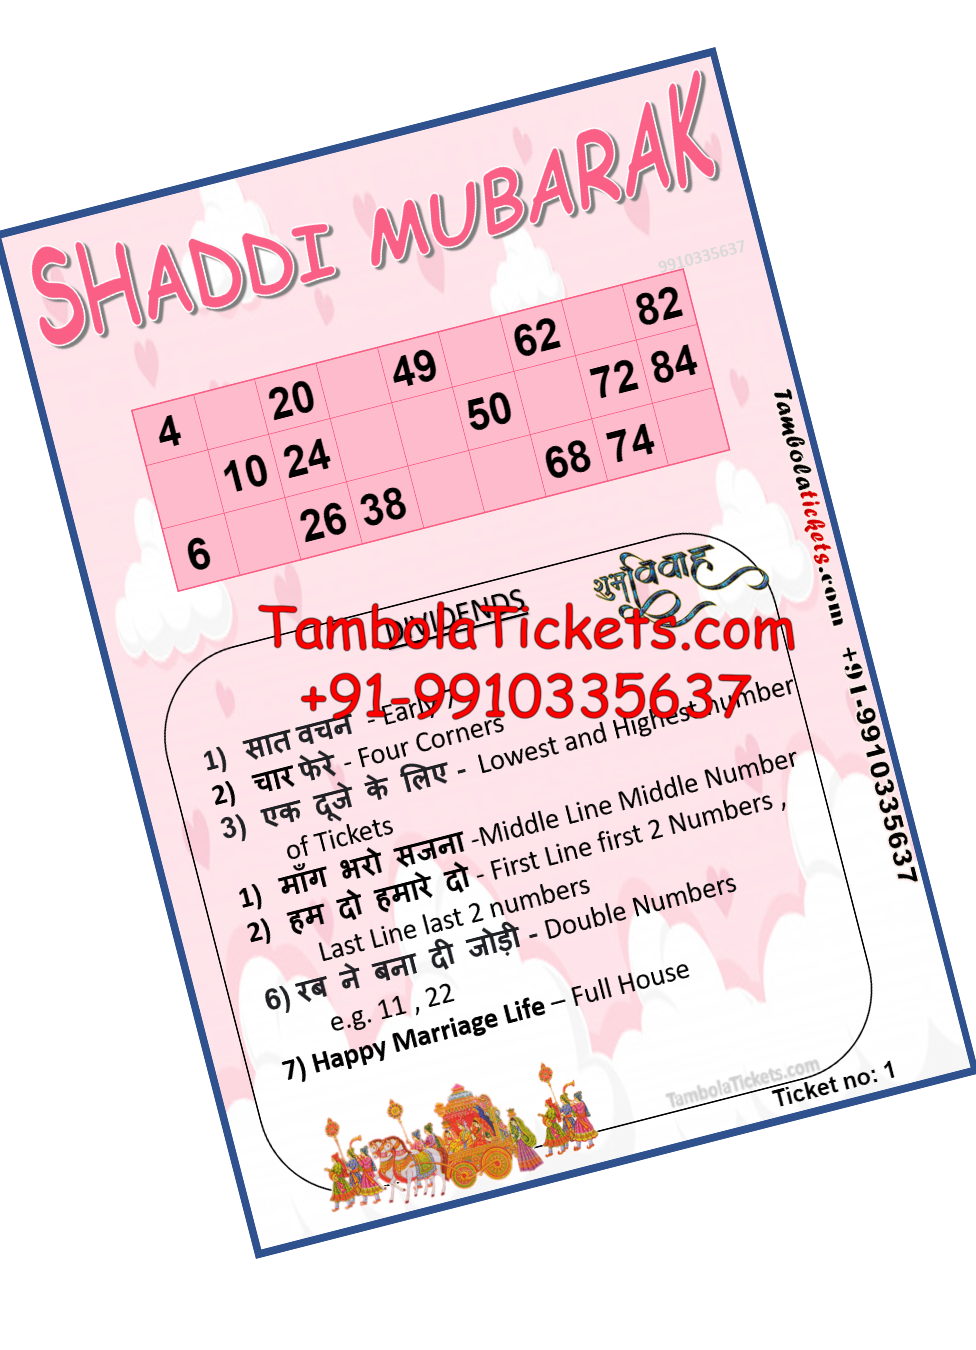 shaddi mubarak theme tambola housie bingo ticket tambolaticketscom